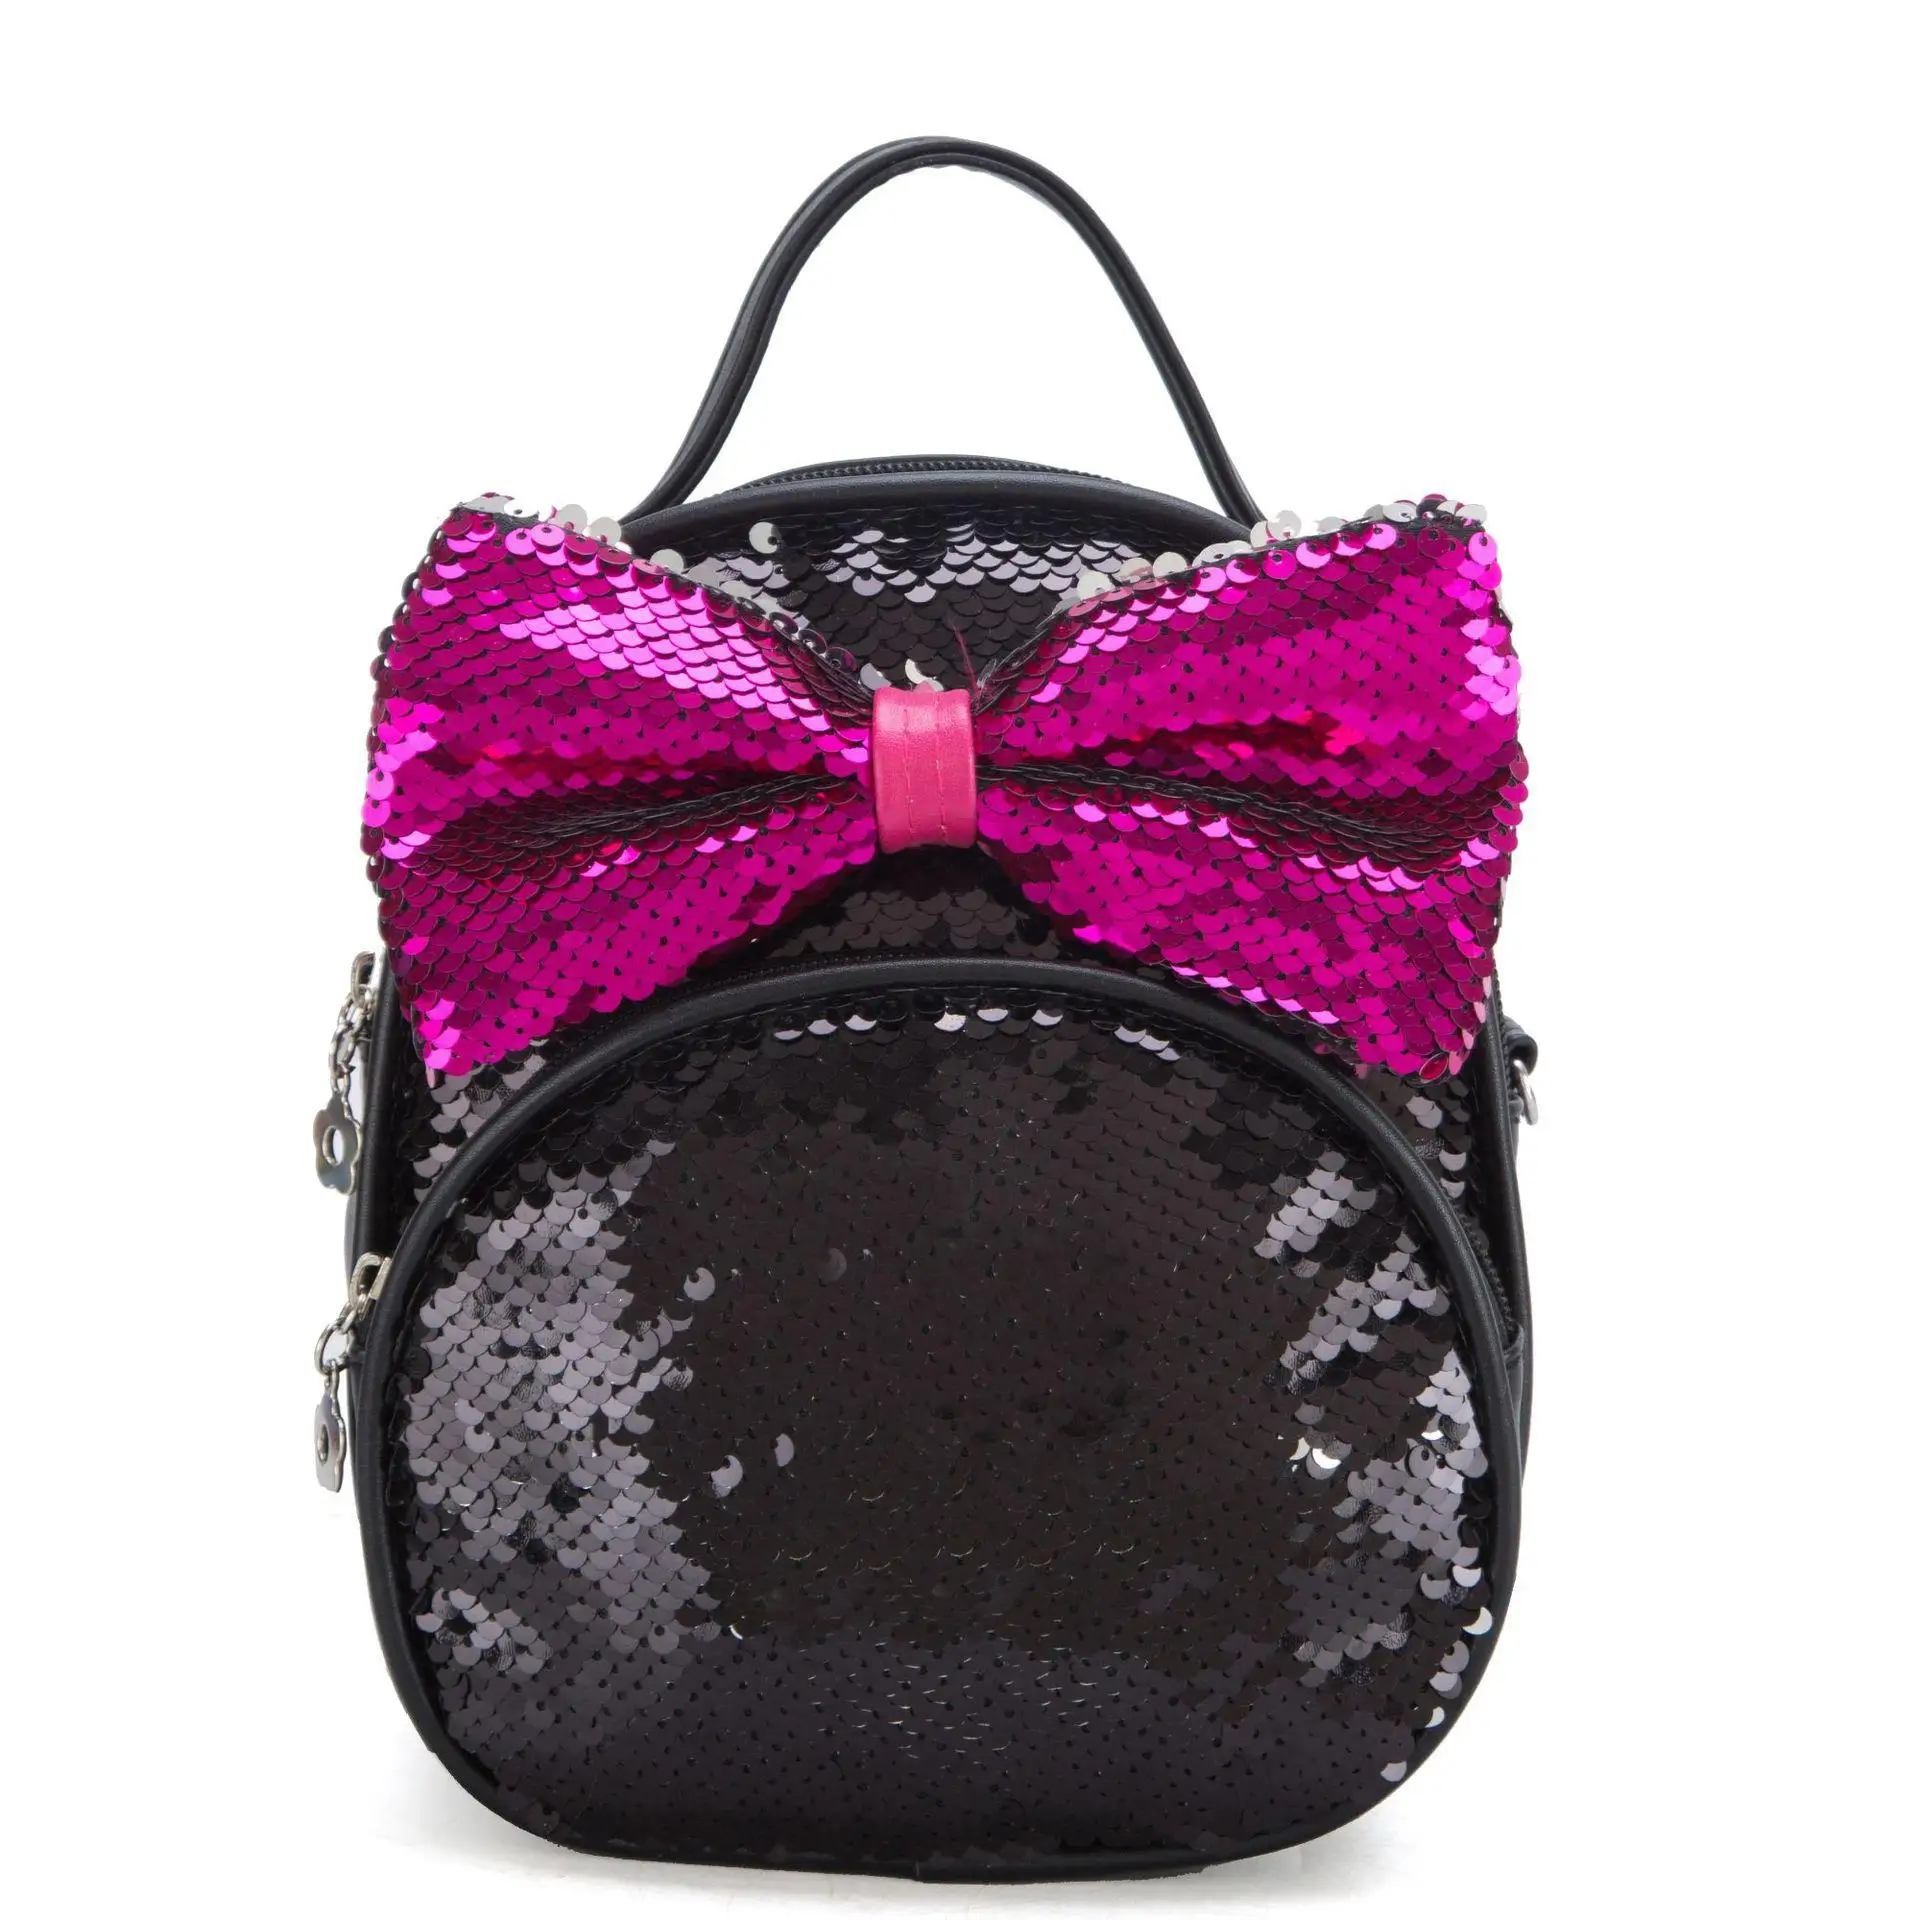 LXFZQ розовый рюкзак для маленьких девочек Mochilas Infantis школьные сумки школьные ортопедические рюкзаки школьная сумка Школьный рюкзак Детская сумка - Цвет: black